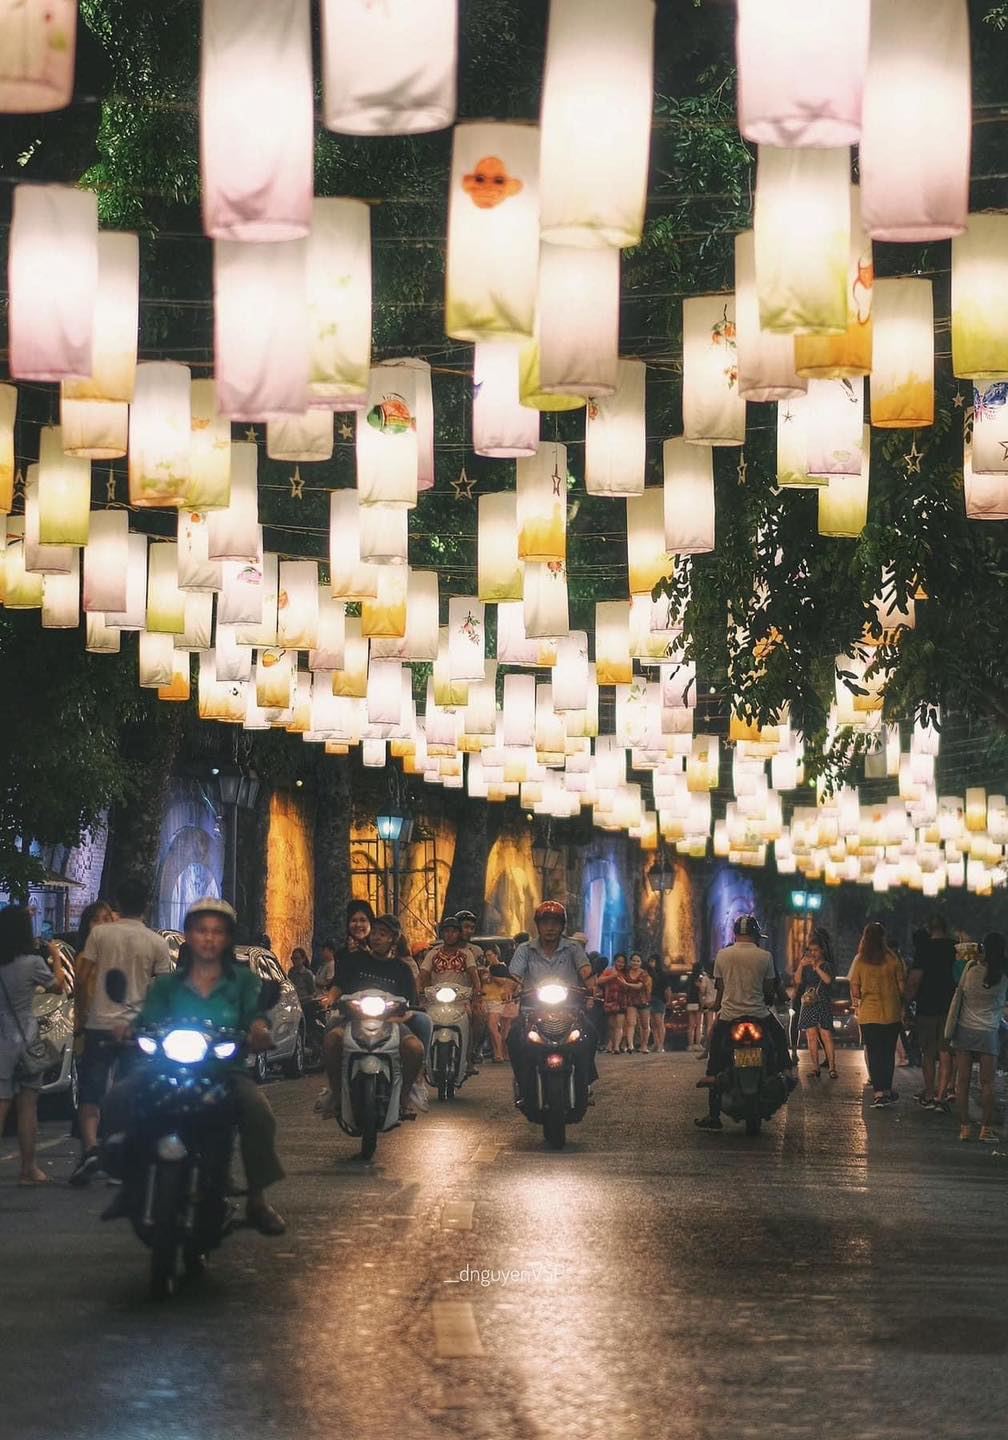 phố lồng đèn Phùng Hưng